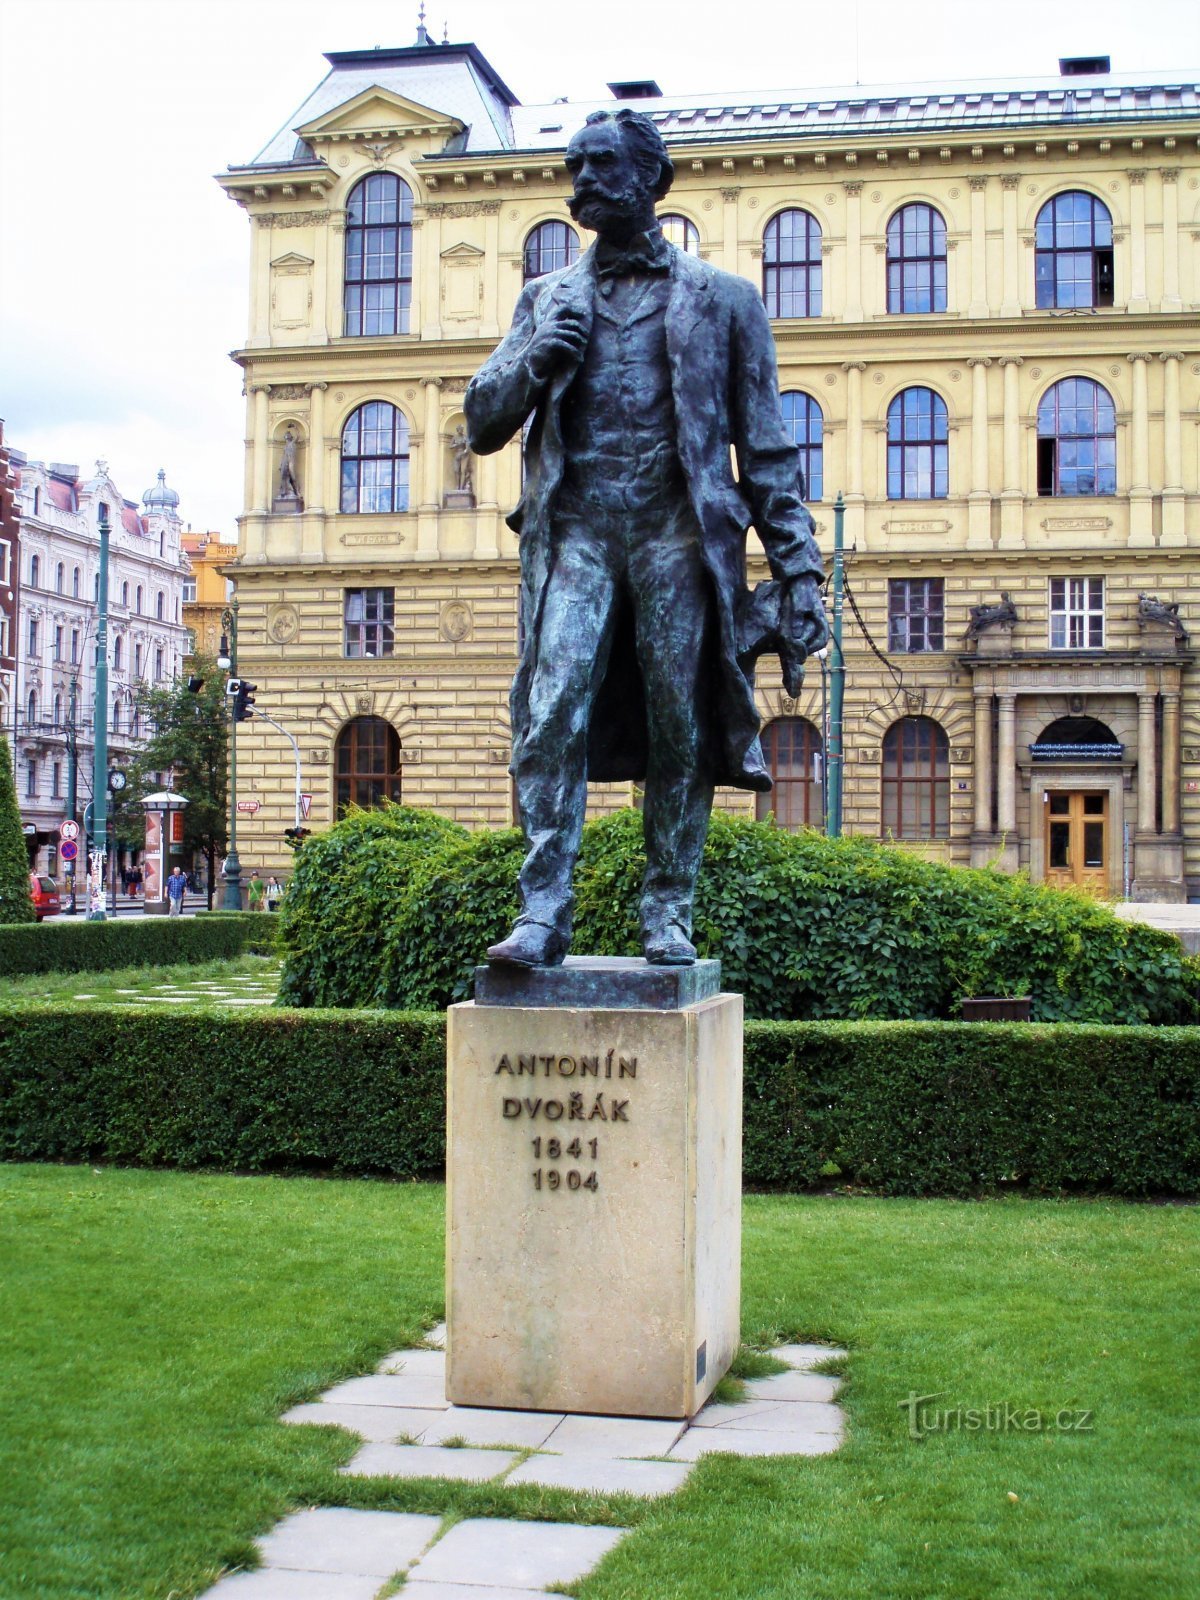 Памятник Антонину Дворжаку (Прага, 9.7.2008 июля XNUMX г.)